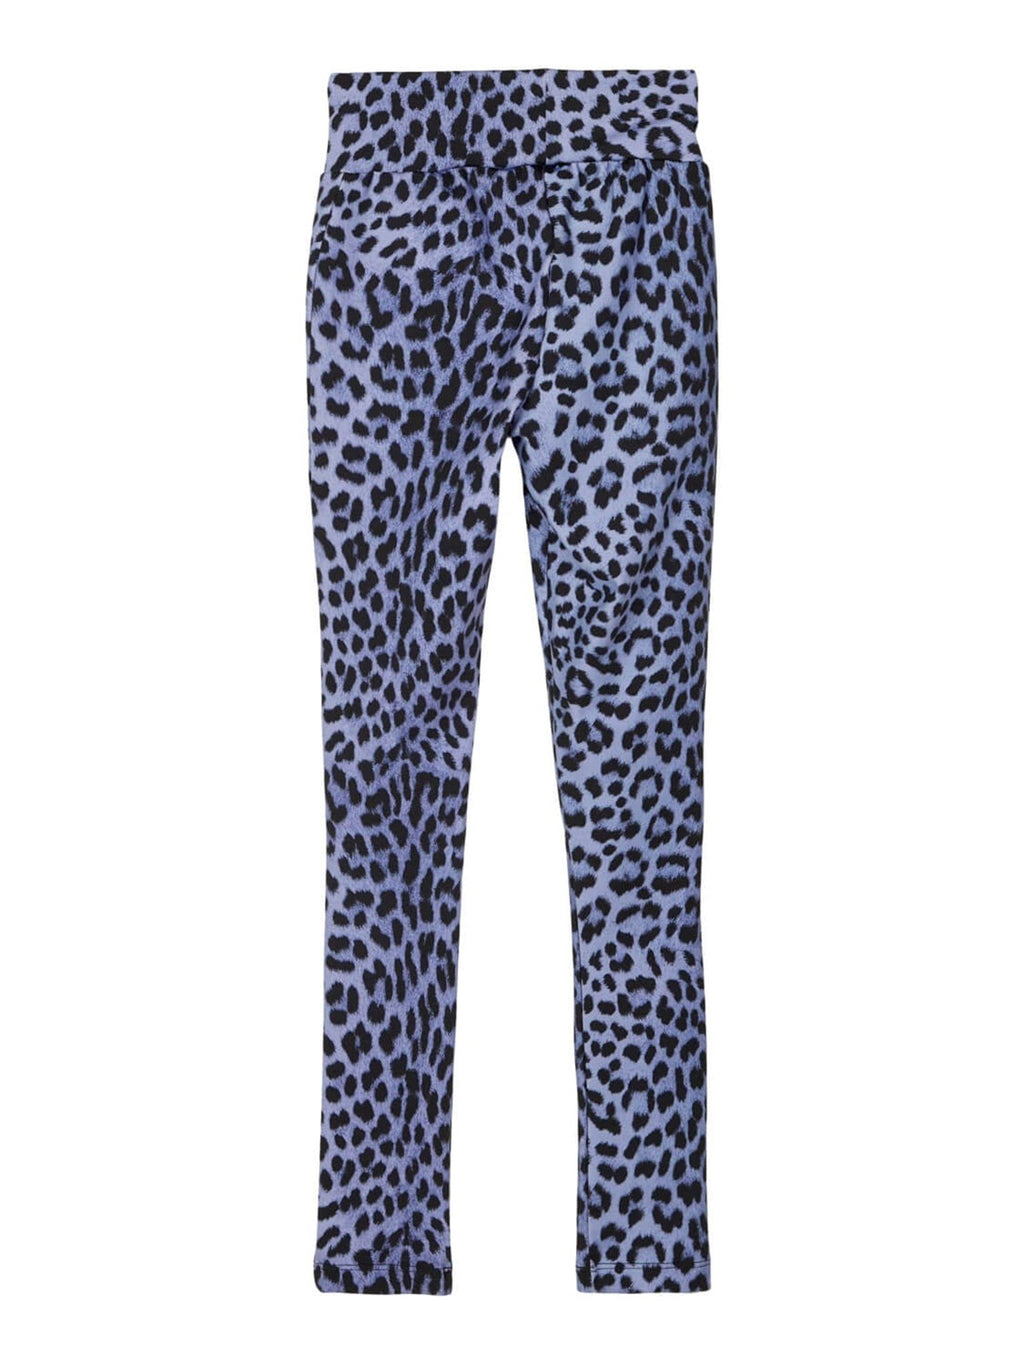 Mønstrede leggings - Blå leopard